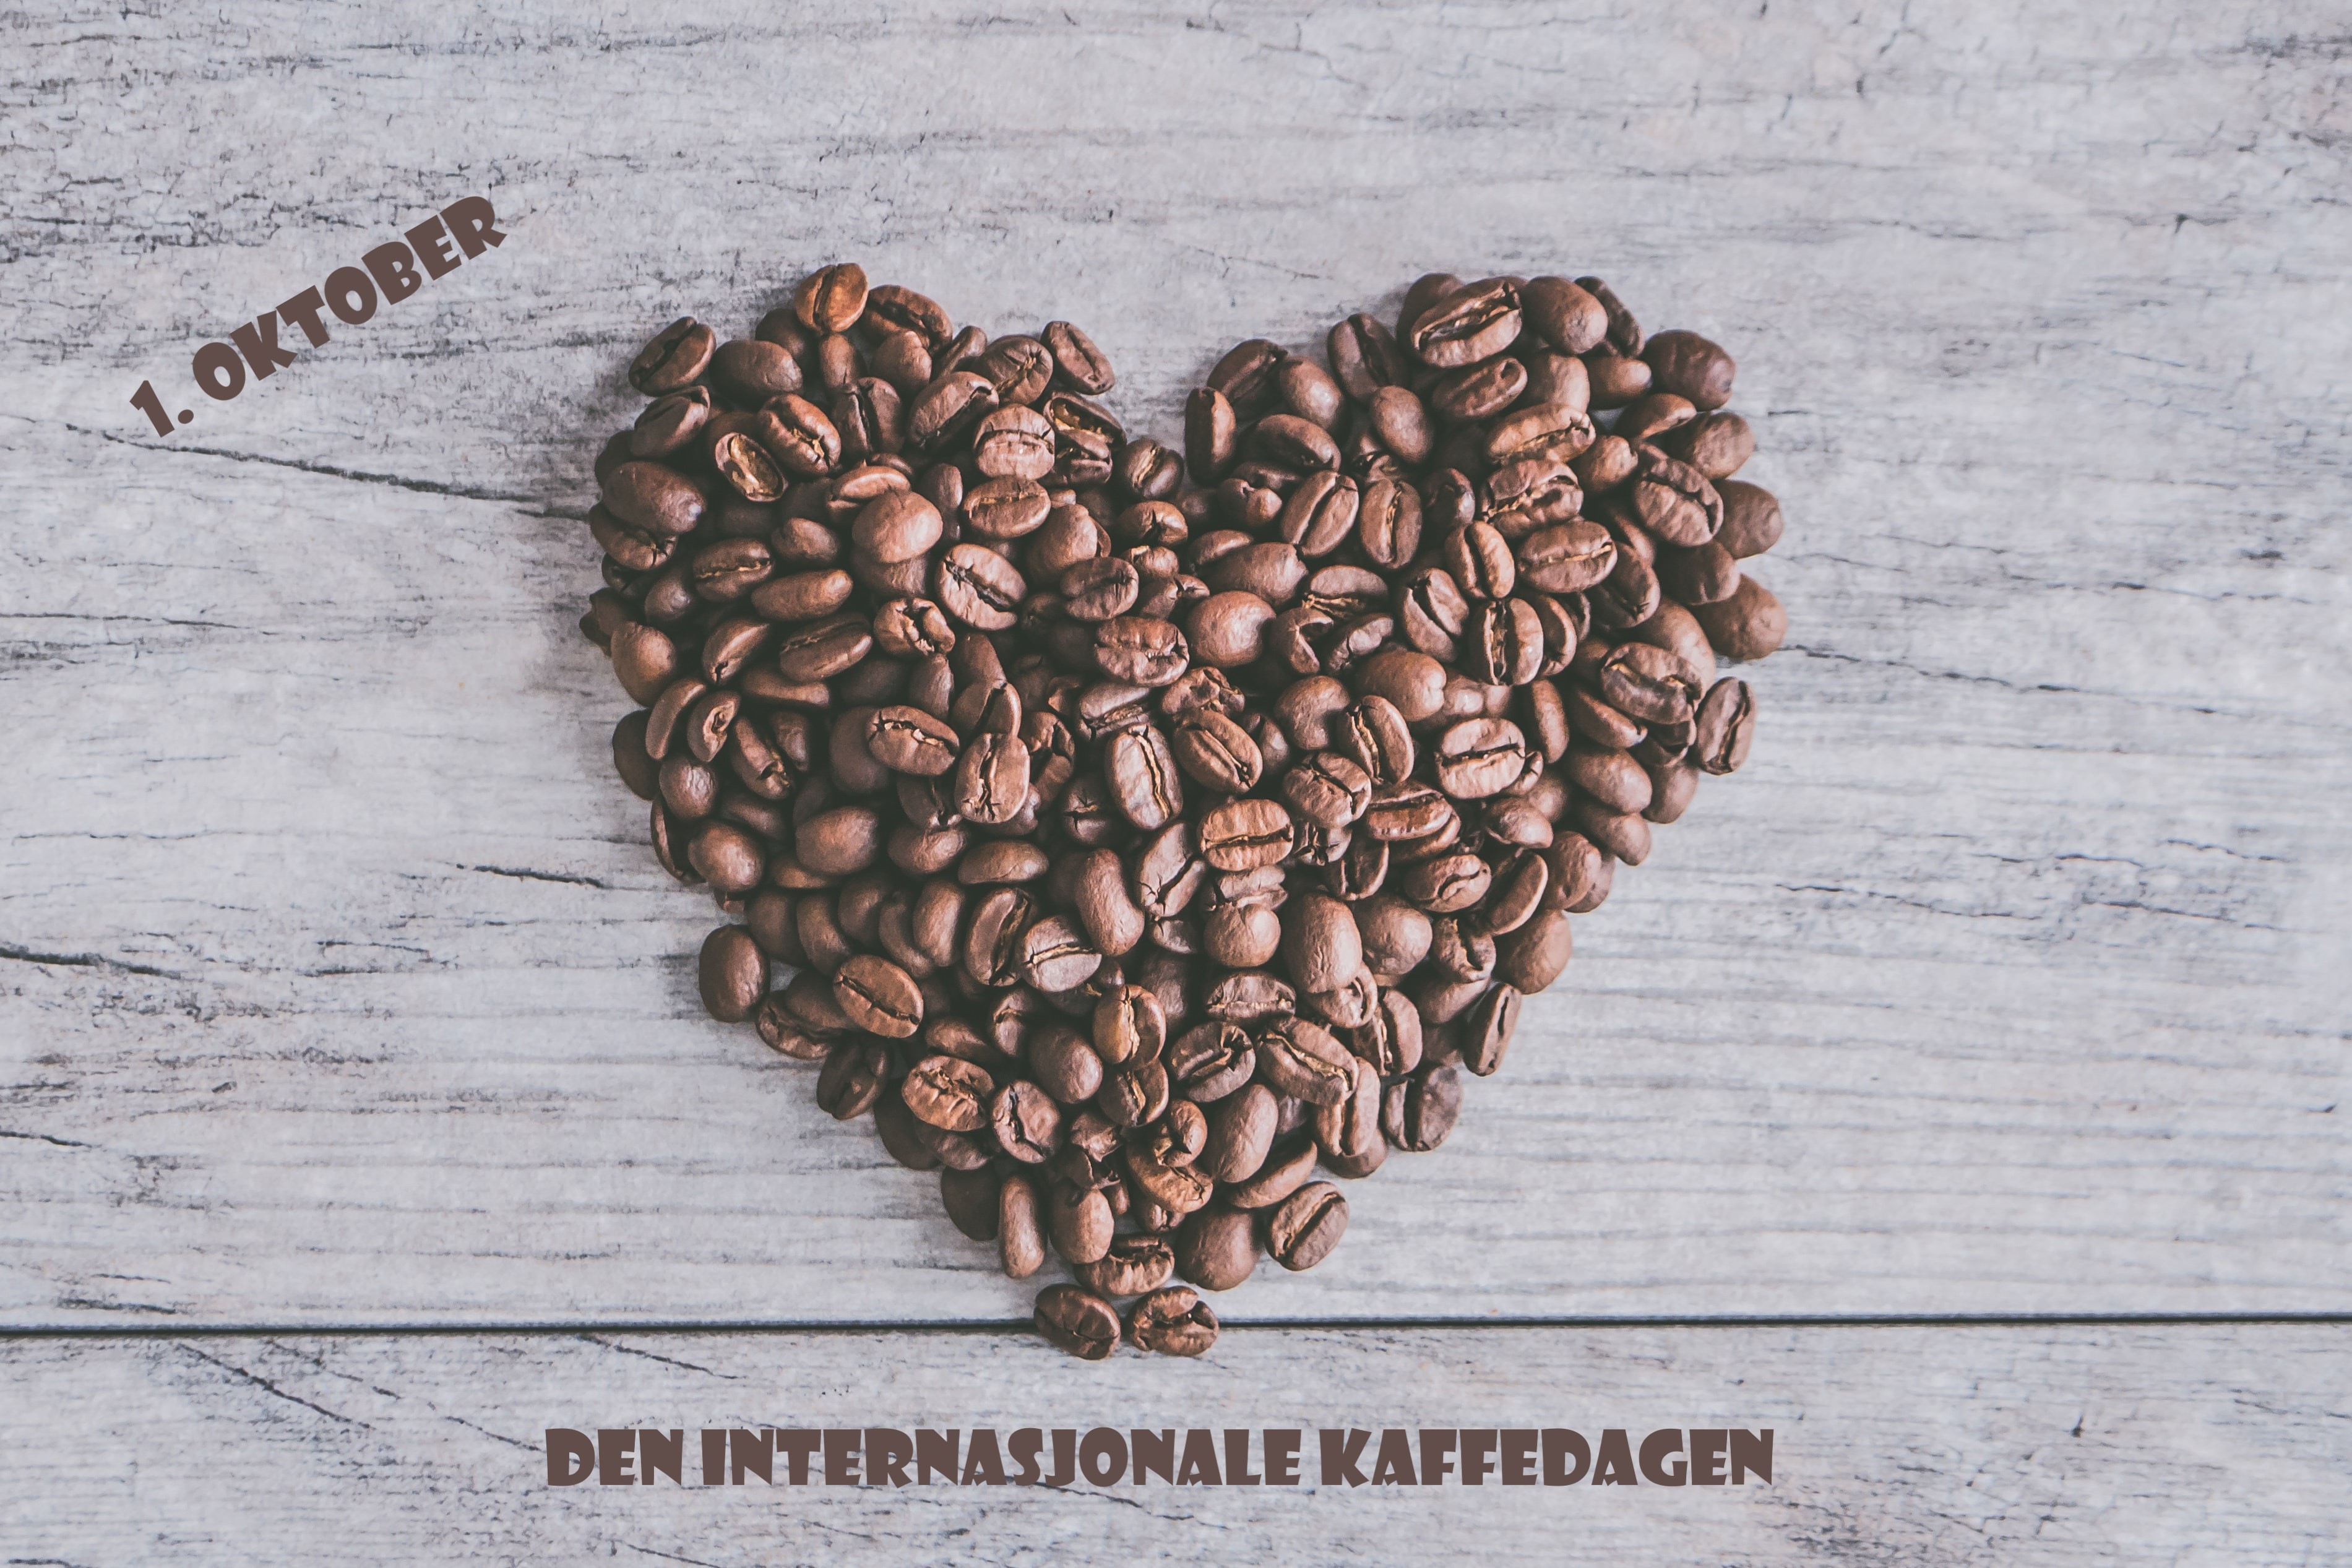 Internasjonale kaffedagen 2016